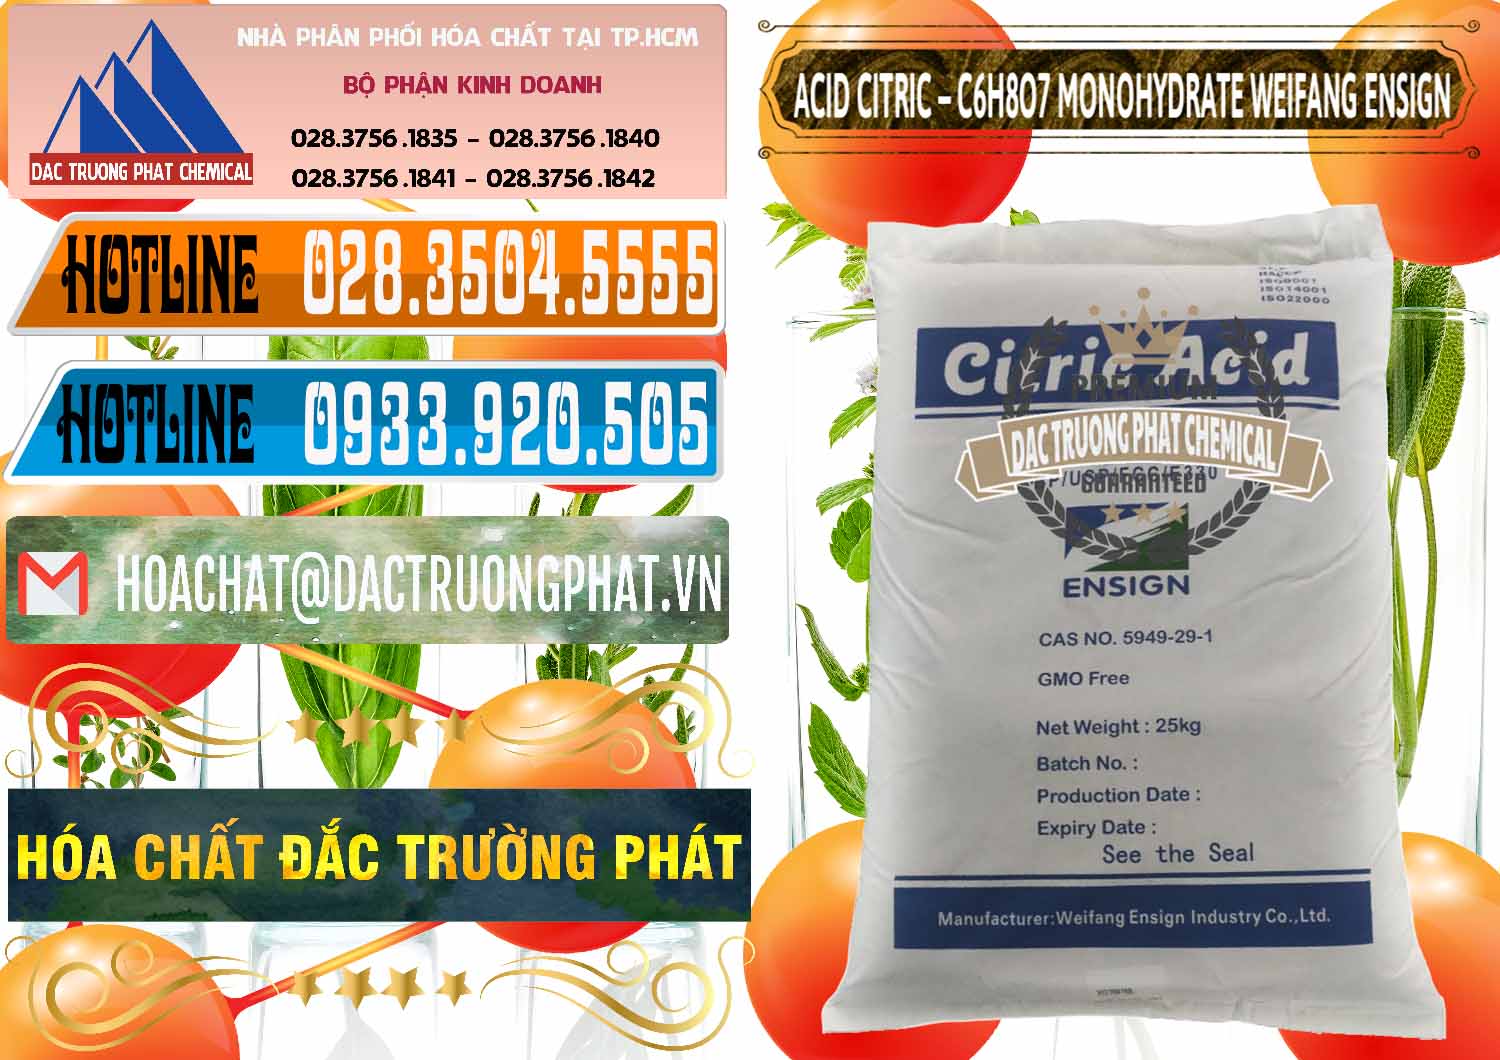 Chuyên bán - phân phối Acid Citric - Axit Citric Monohydrate Weifang Trung Quốc China - 0009 - Phân phối - kinh doanh hóa chất tại TP.HCM - stmp.net